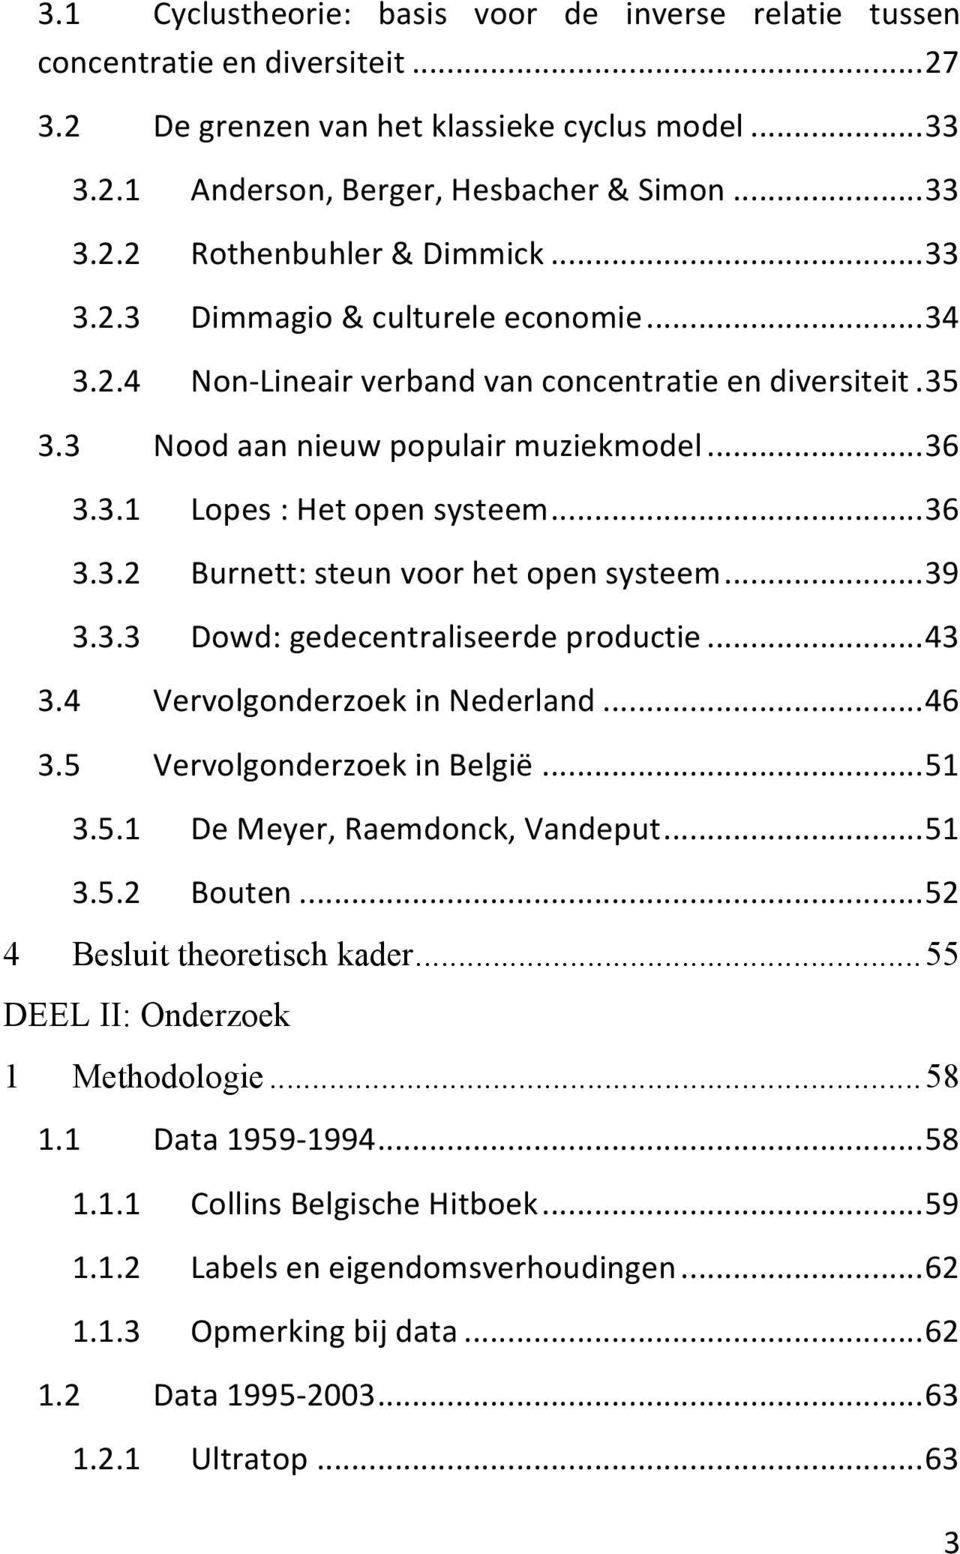 ..39 3.3.3 Dowd: gedecentraliseerde productie...43 3.4 Vervolgonderzoek in Nederland...46 3.5 Vervolgonderzoek in België...51 3.5.1 De Meyer, Raemdonck, Vandeput...51 3.5.2 Bouten.